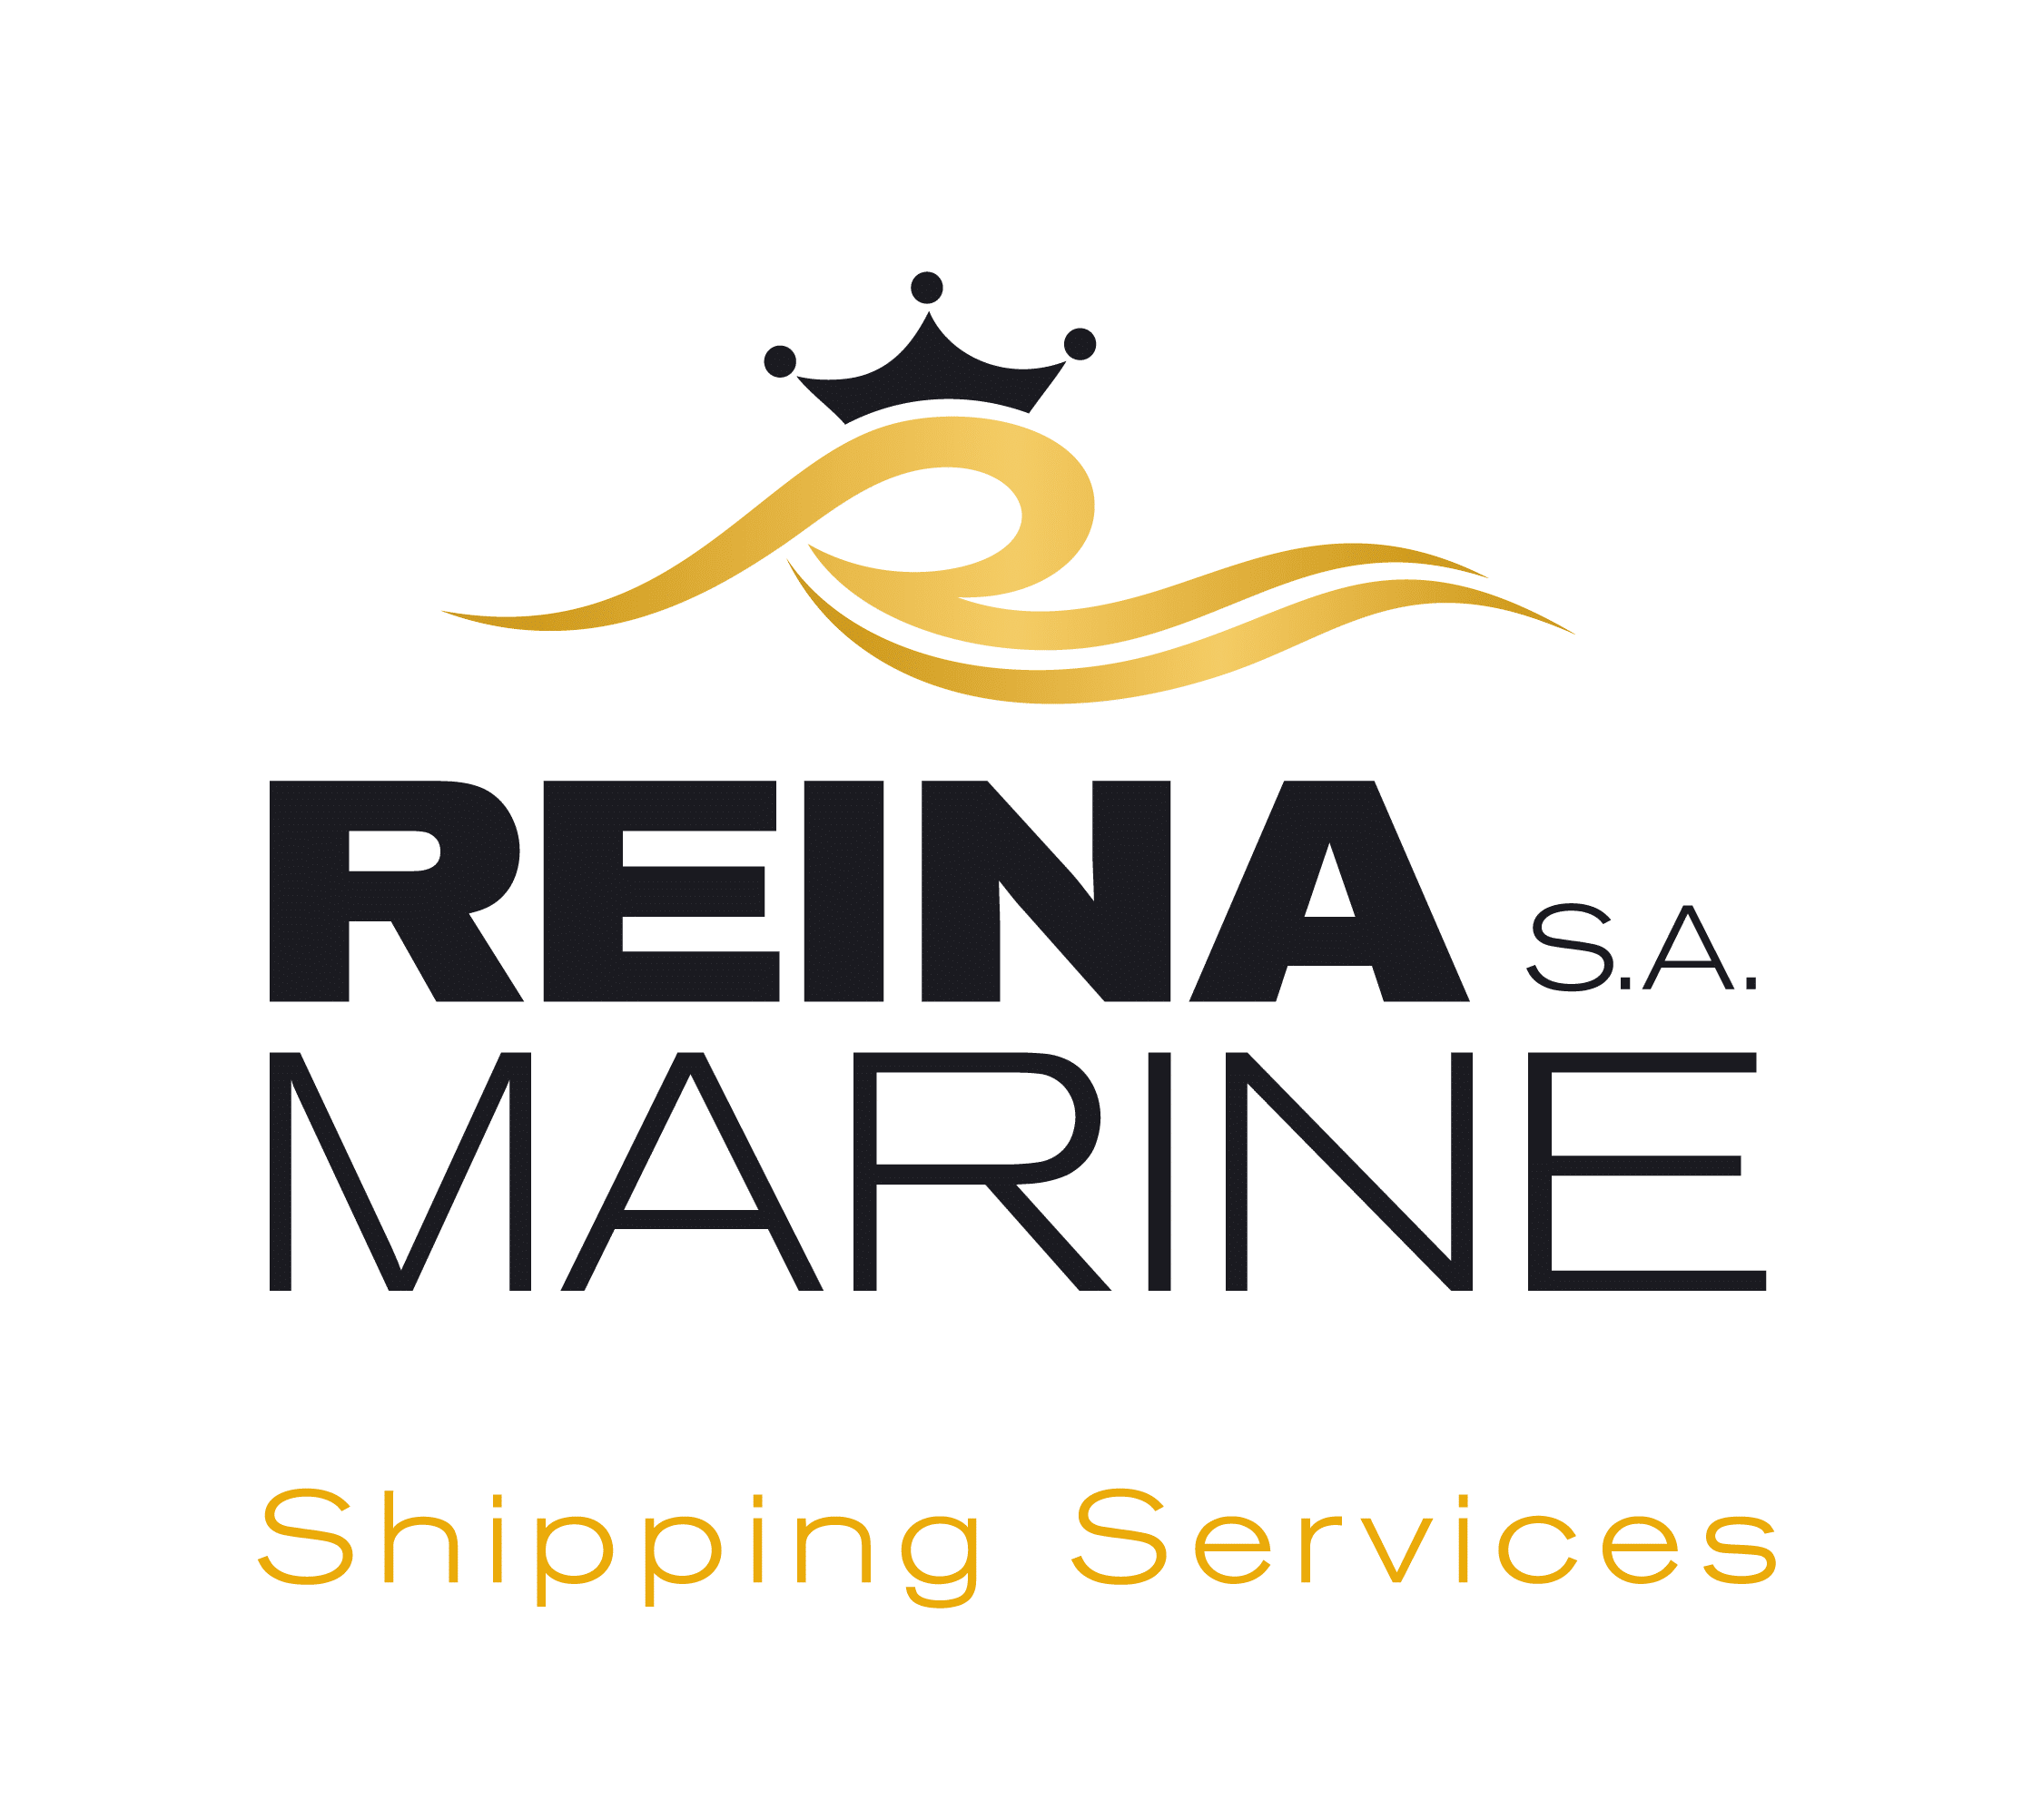 Reina Marine SA